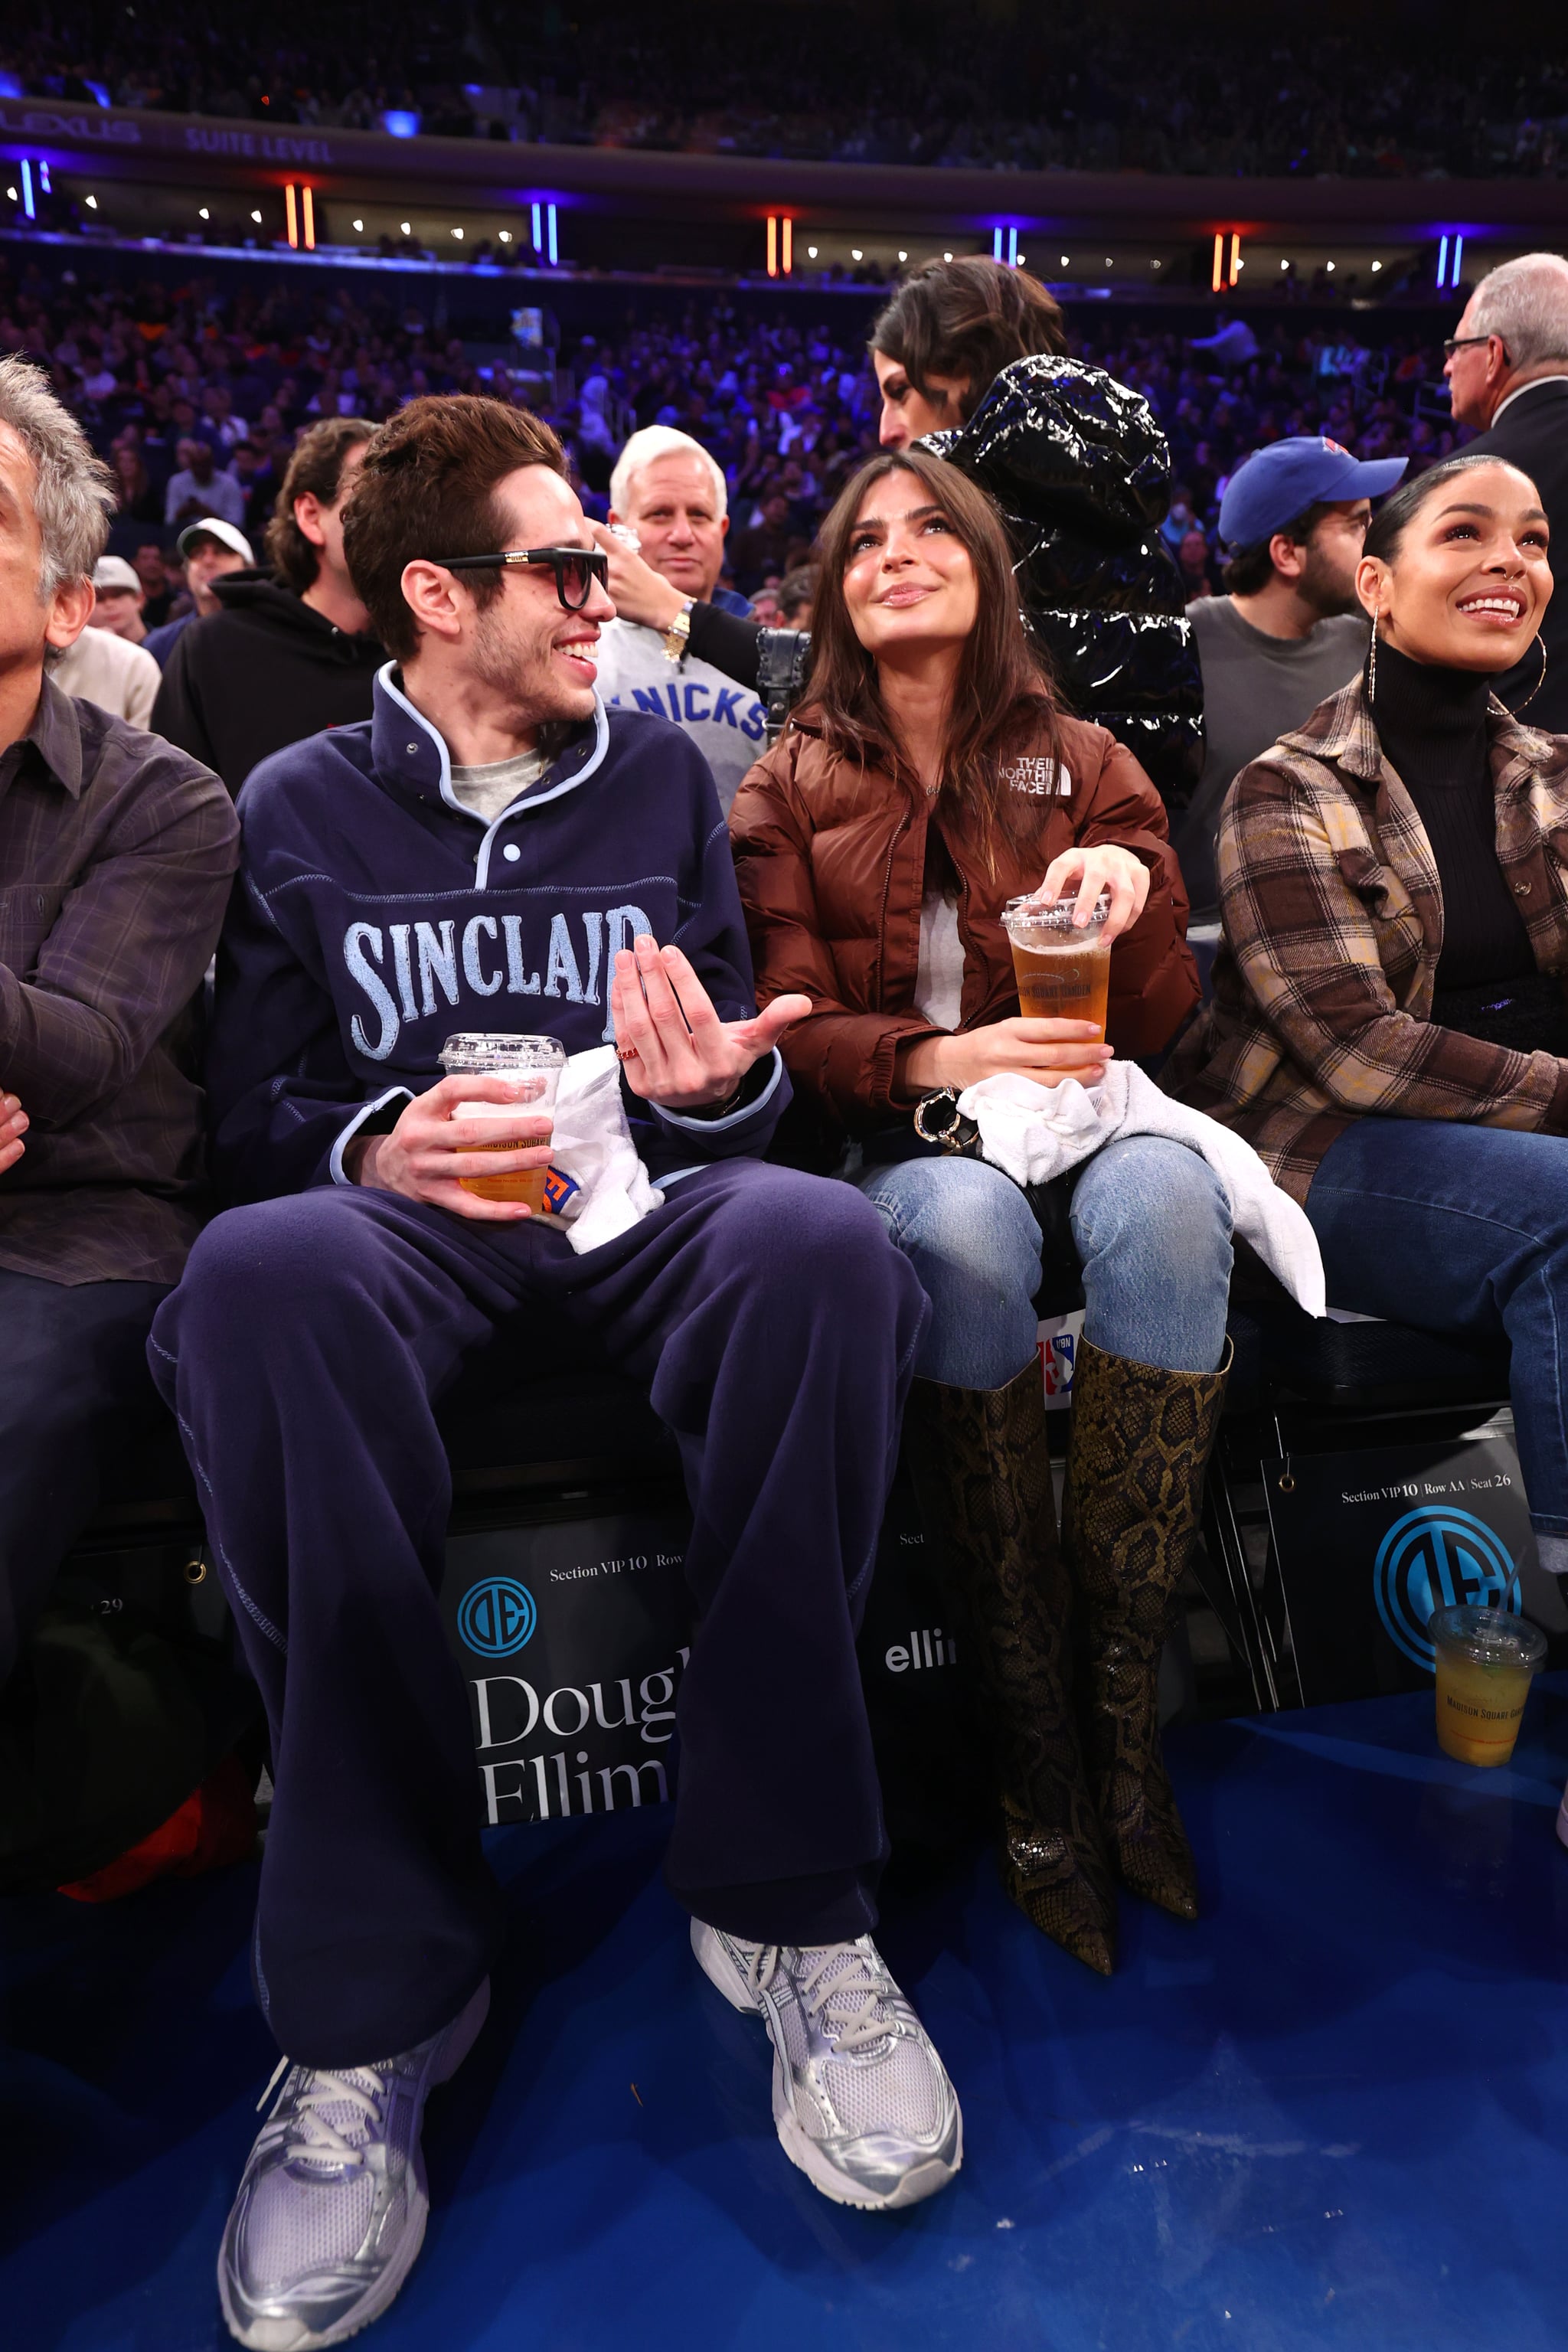 NOWY JORK, NY - NOVEMBER 27: Aktor Pete Davidson i modelka Emily Ratajkowski uczestniczą w meczu pomiędzy Memphis Grizzlies i New York Knicks 27 listopada 2022 roku w Madison Square Garden w Nowym Jorku.  UWAGA DLA UŻYTKOWNIKA: Użytkownik wyraźnie potwierdza i zgadza się, że pobierając i lub używając tego zdjęcia, użytkownik wyraża zgodę na warunki i zasady Umowy licencyjnej Getty Images. Obowiązkowa informacja o prawach autorskich: Copyright 2022 NBAE (Photo by Nathaniel S. Butler/NBAE via Getty Images)